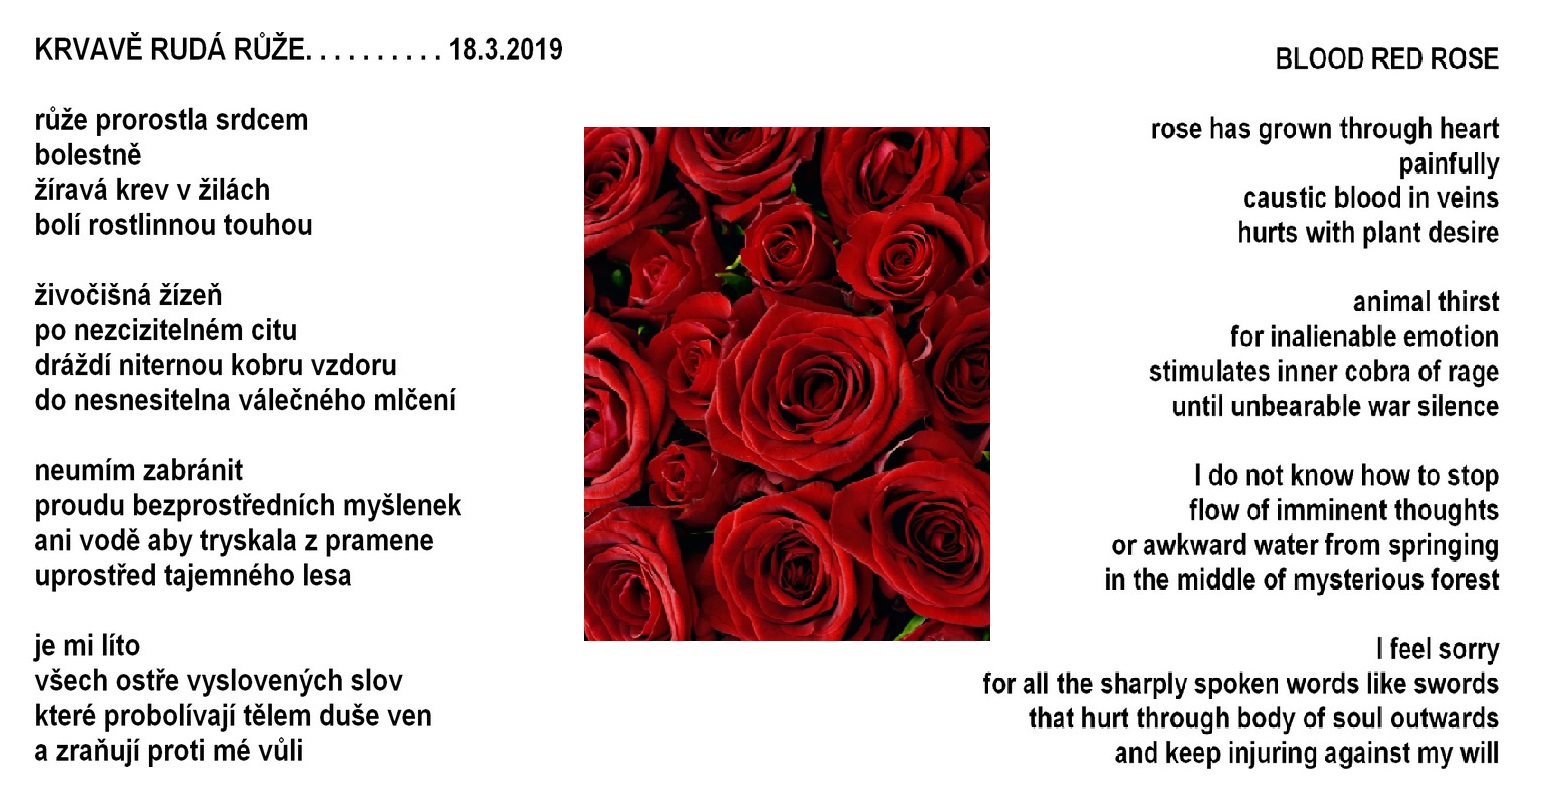 Krvavě rudá růže / Blood red rose